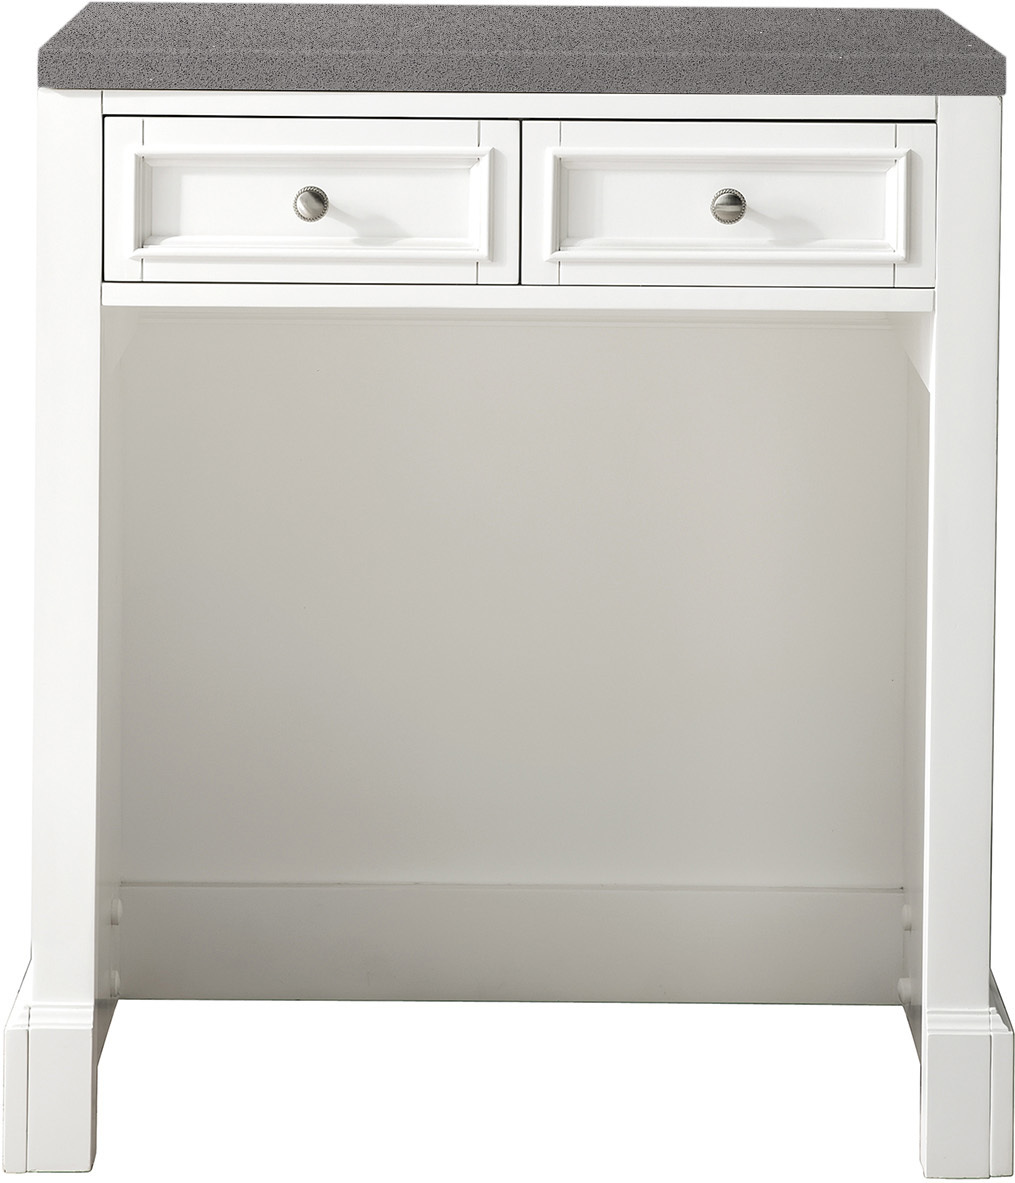  James Martin Countertop Unit Storage Cabinets Bright White